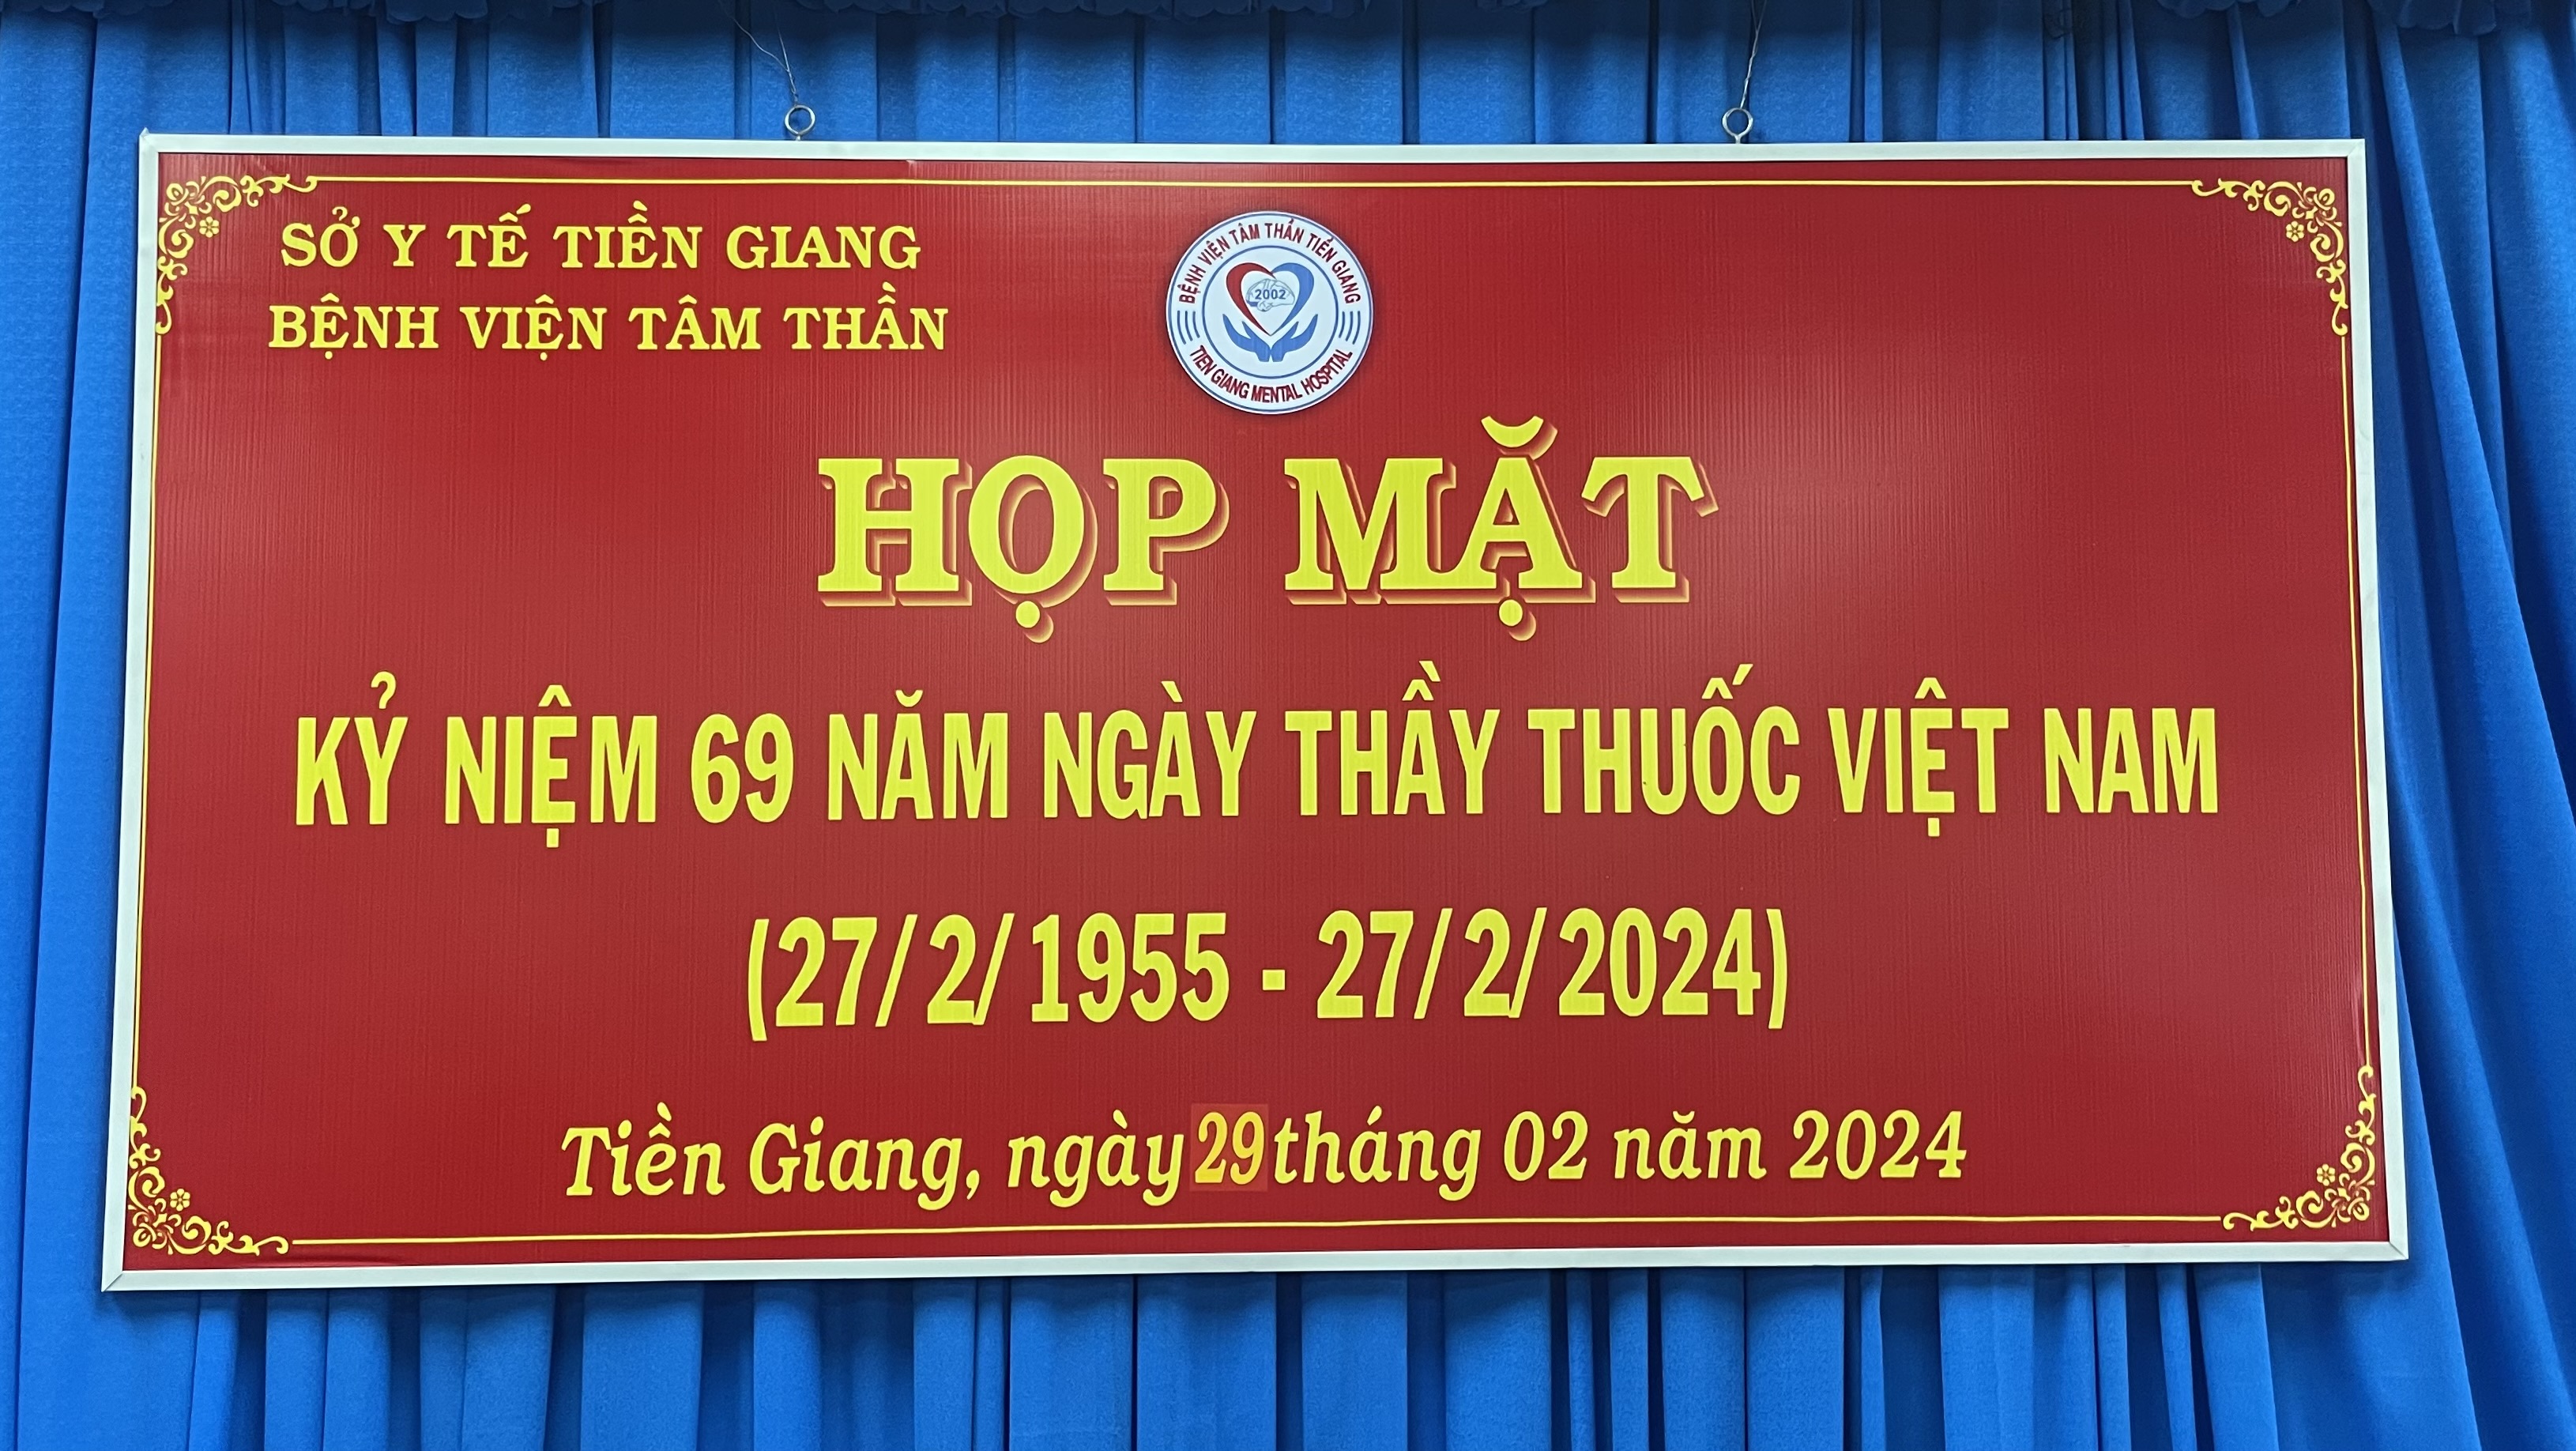 Bệnh viện Tâm thần Tiền Giang tổ chức họp mặt kỷ niệm ngày Thầy thuốc Việt Nam 27/2